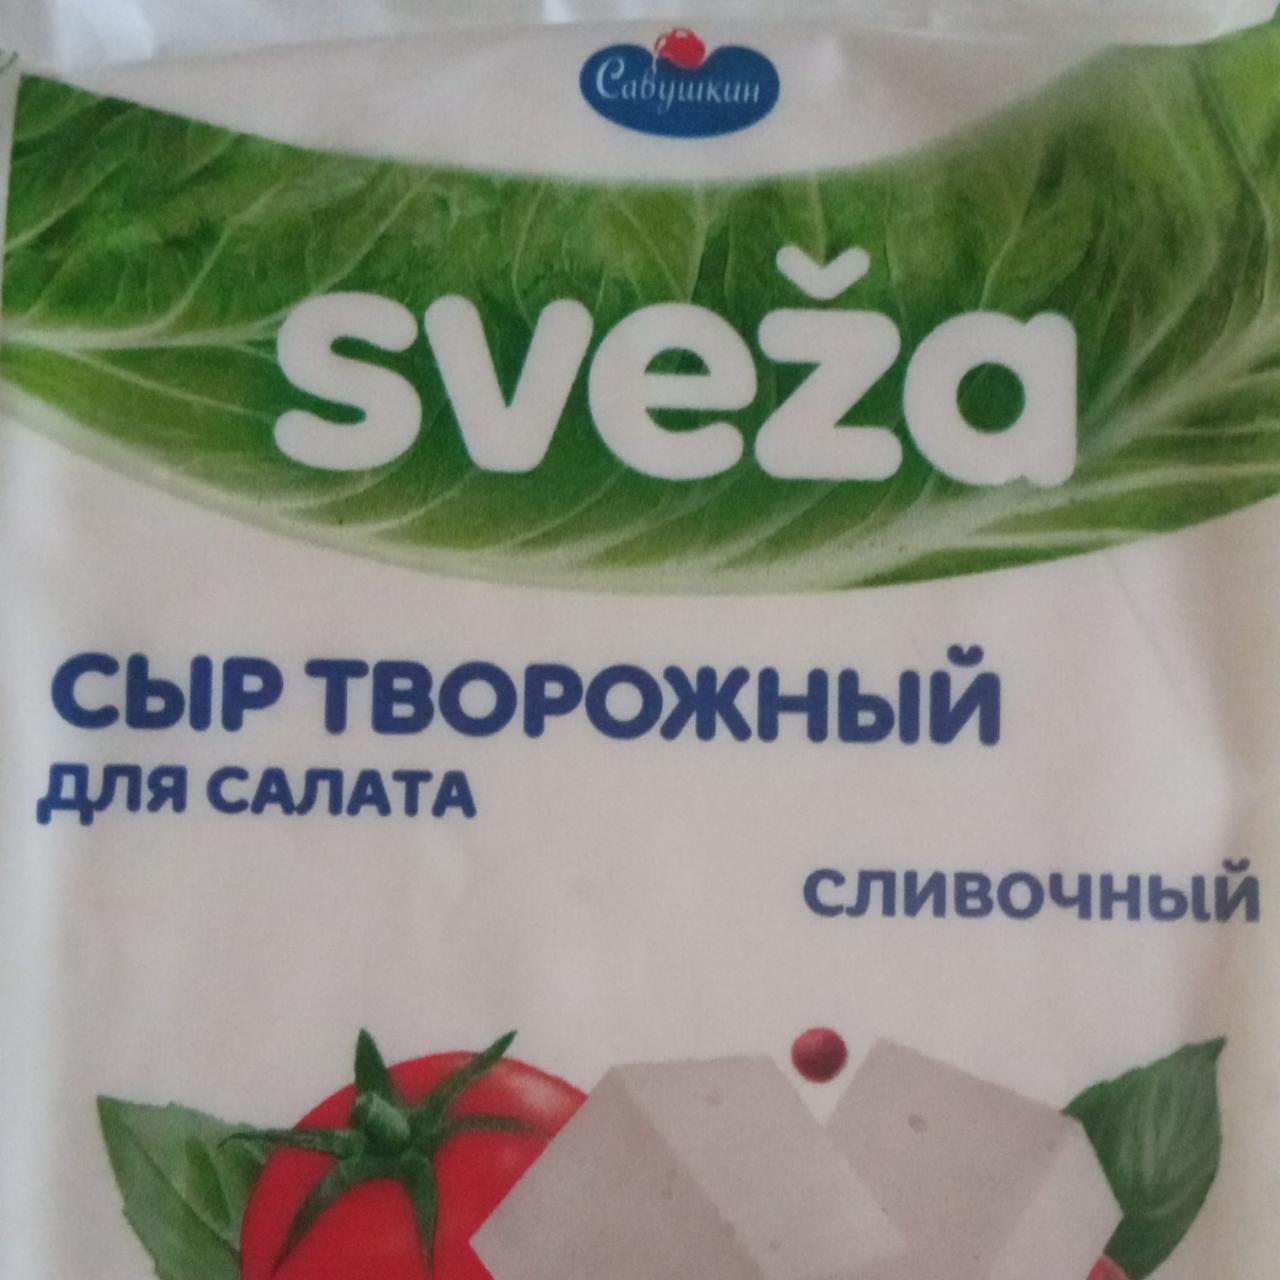 Фото - Сыр творожный Sveza для салата сливочный Савушкин